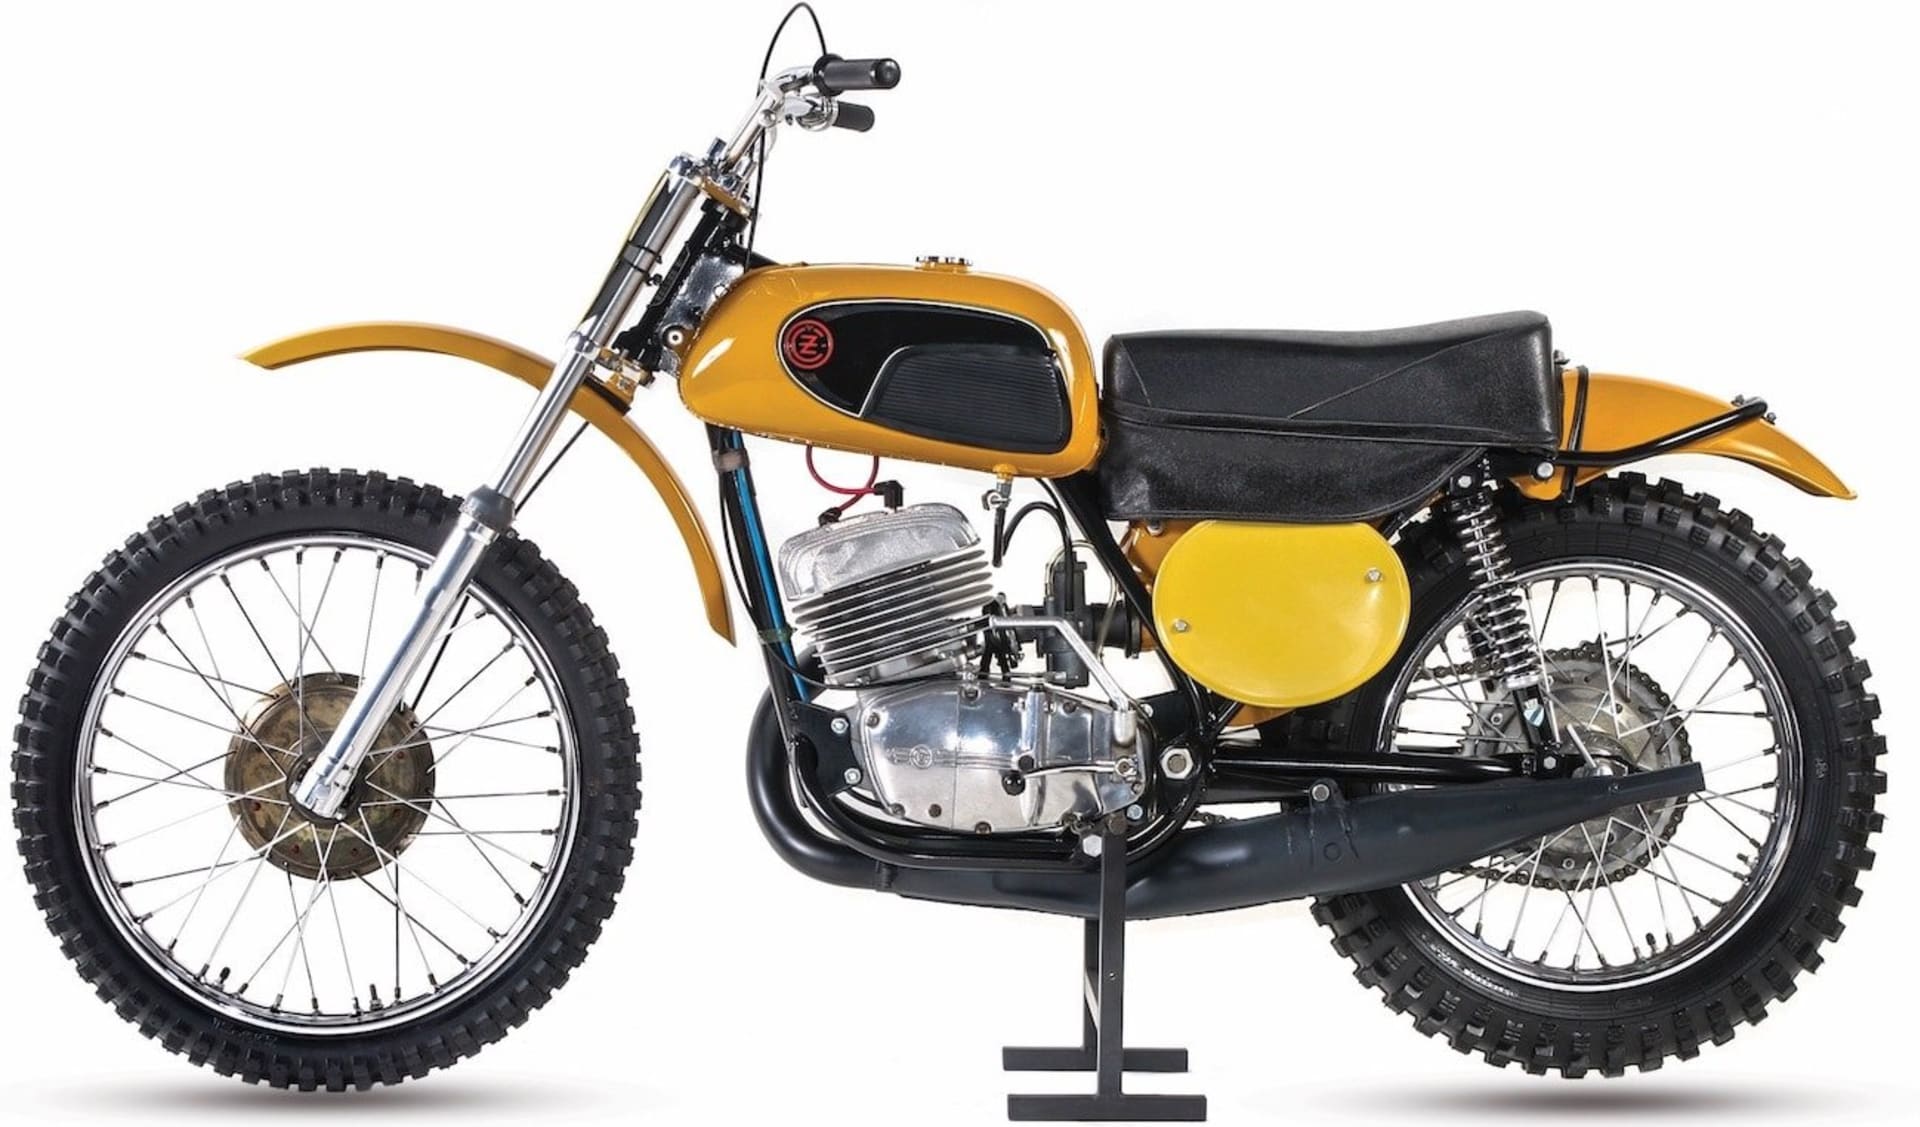 Strakonické krosky vládly světovému motokrosu v letech 196469. Typ 981 se vyráběl od roku 1970 a většina strojů našla své působiště v zámoří.